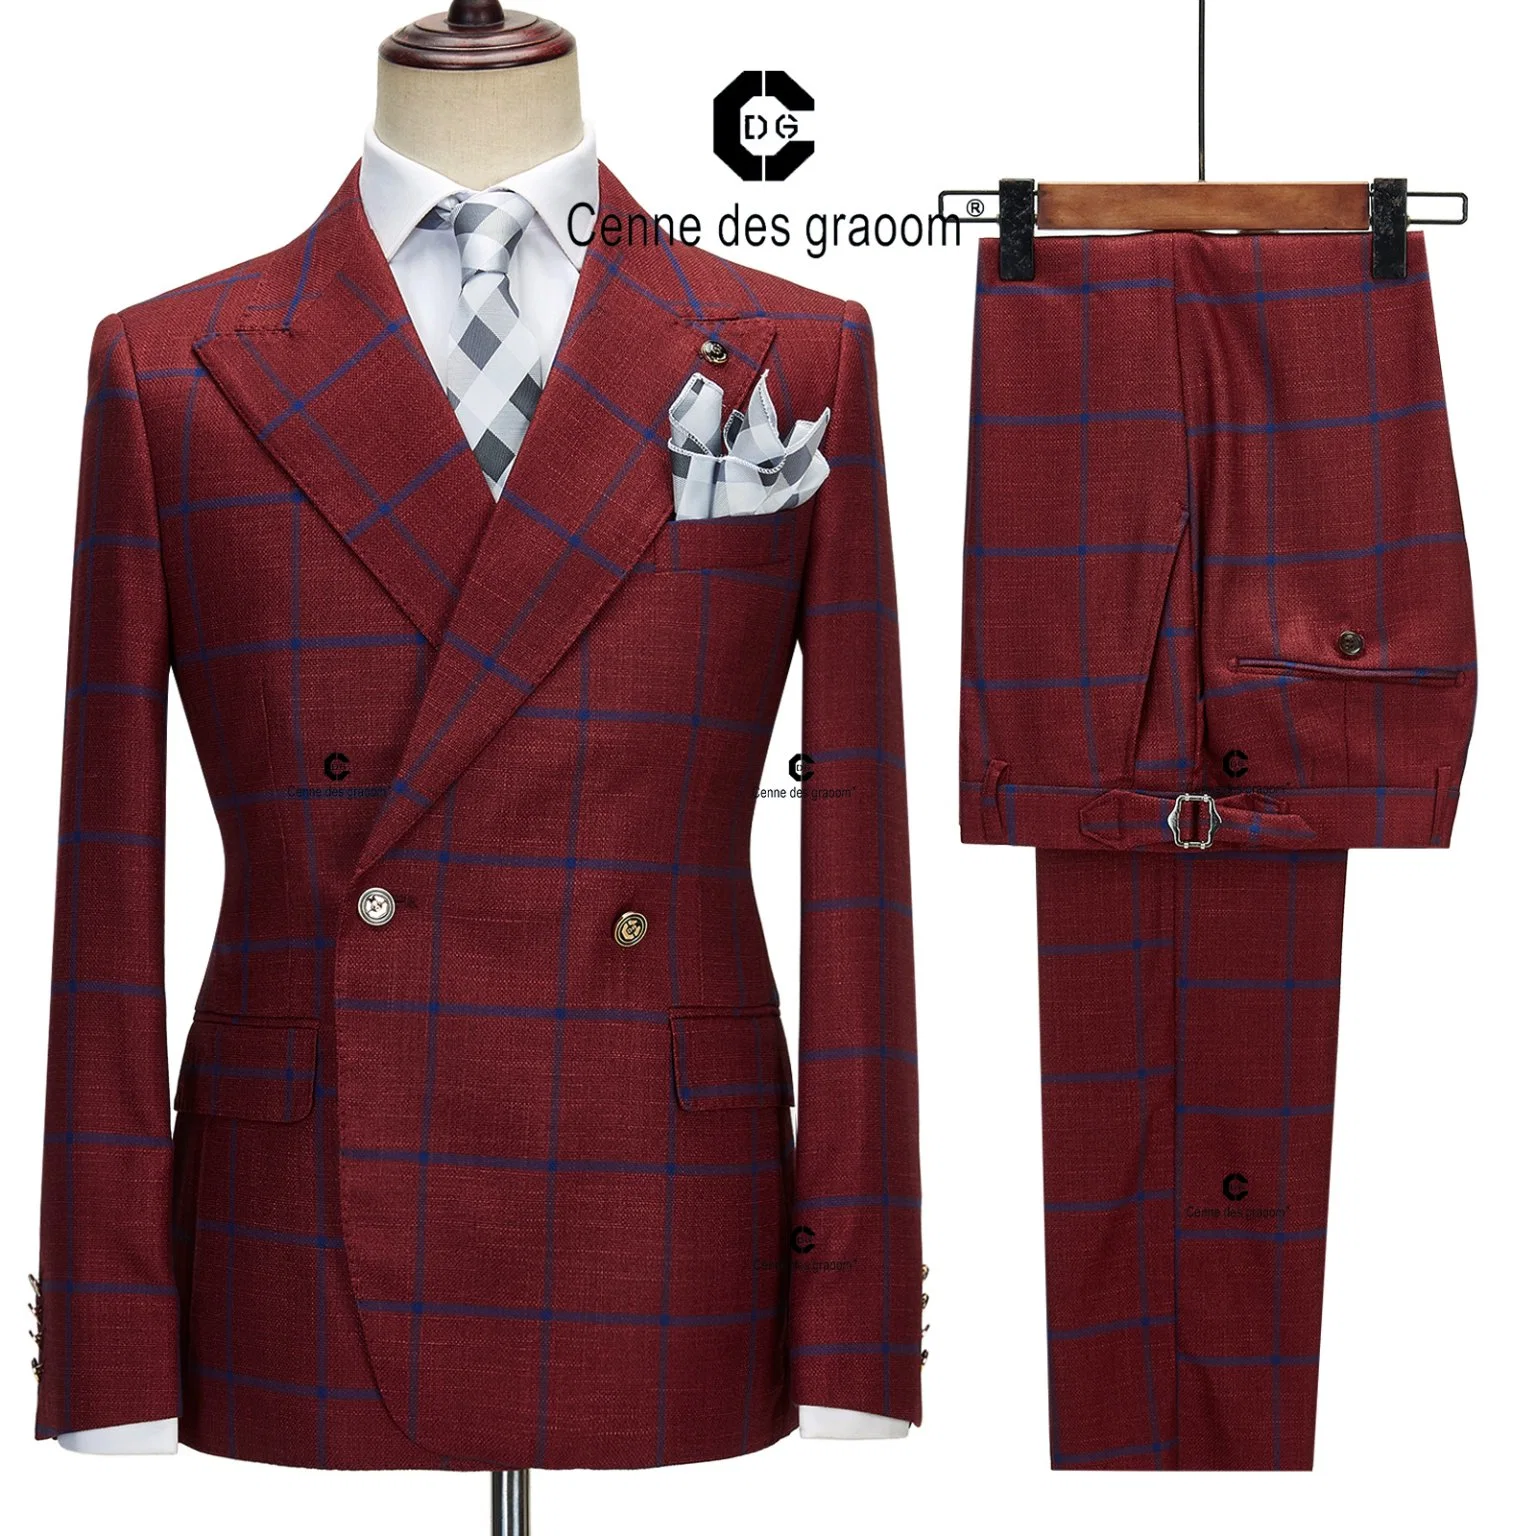 OEM Plaid Men Business Casual Suit Suit Slim-Fit Wedding Groom Suit Man